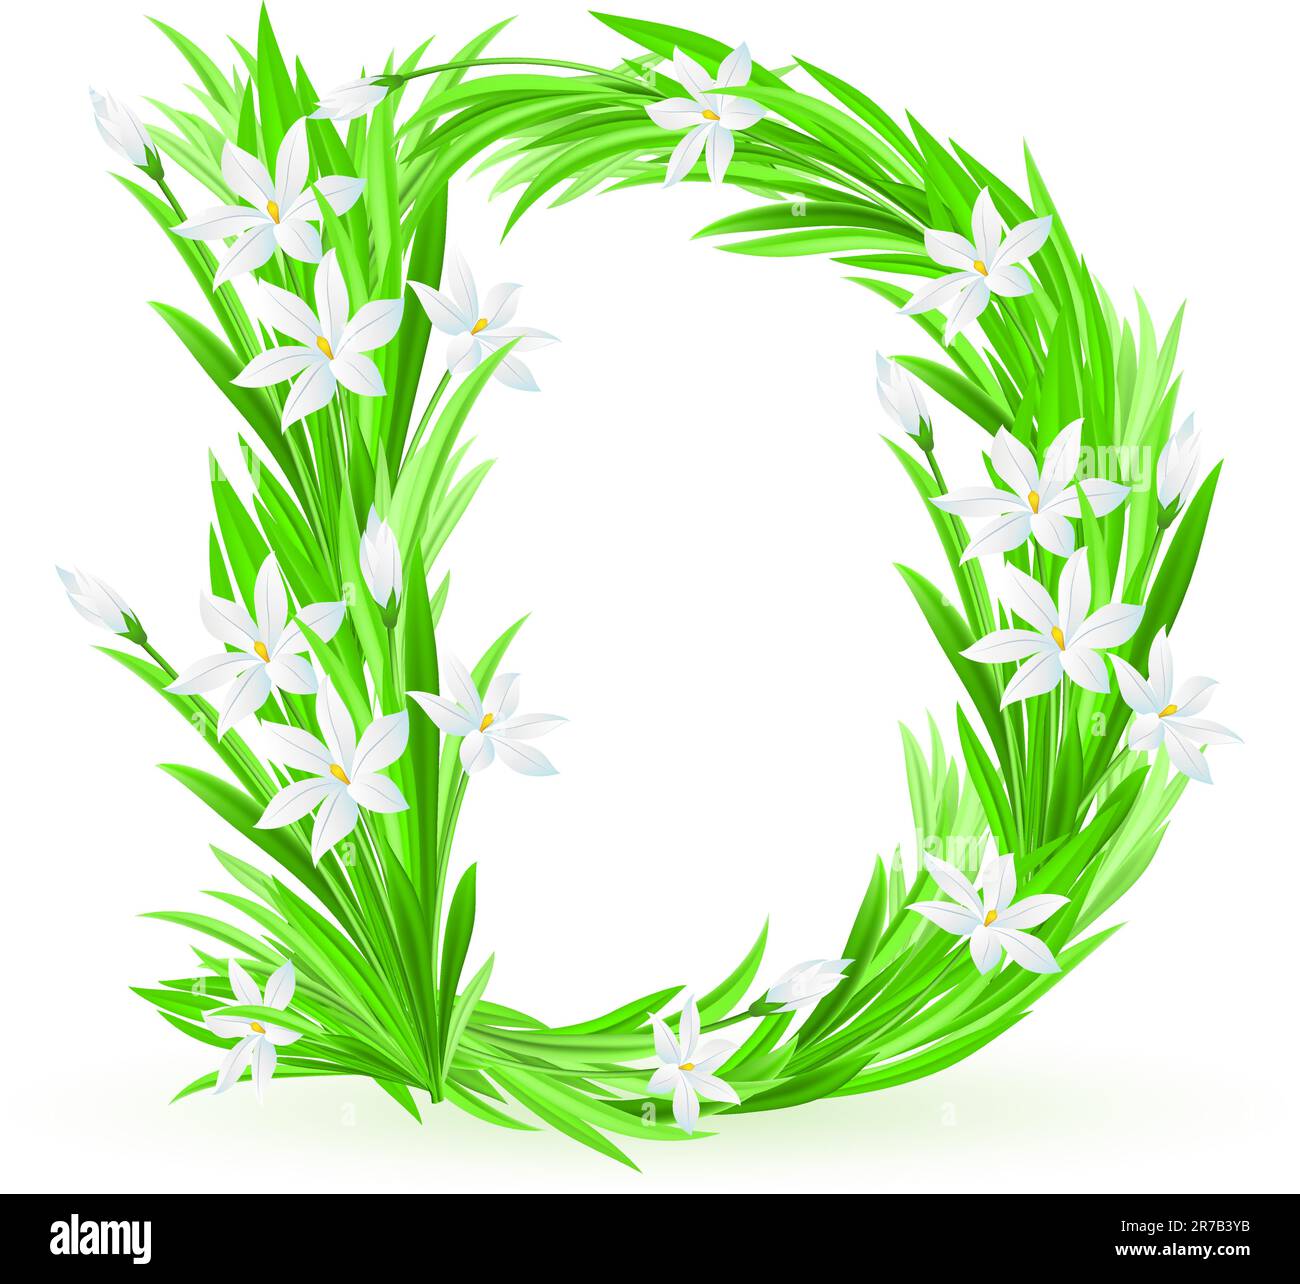 One letter of spring flowers alphabet - D. Illustration on white background Stock Vector